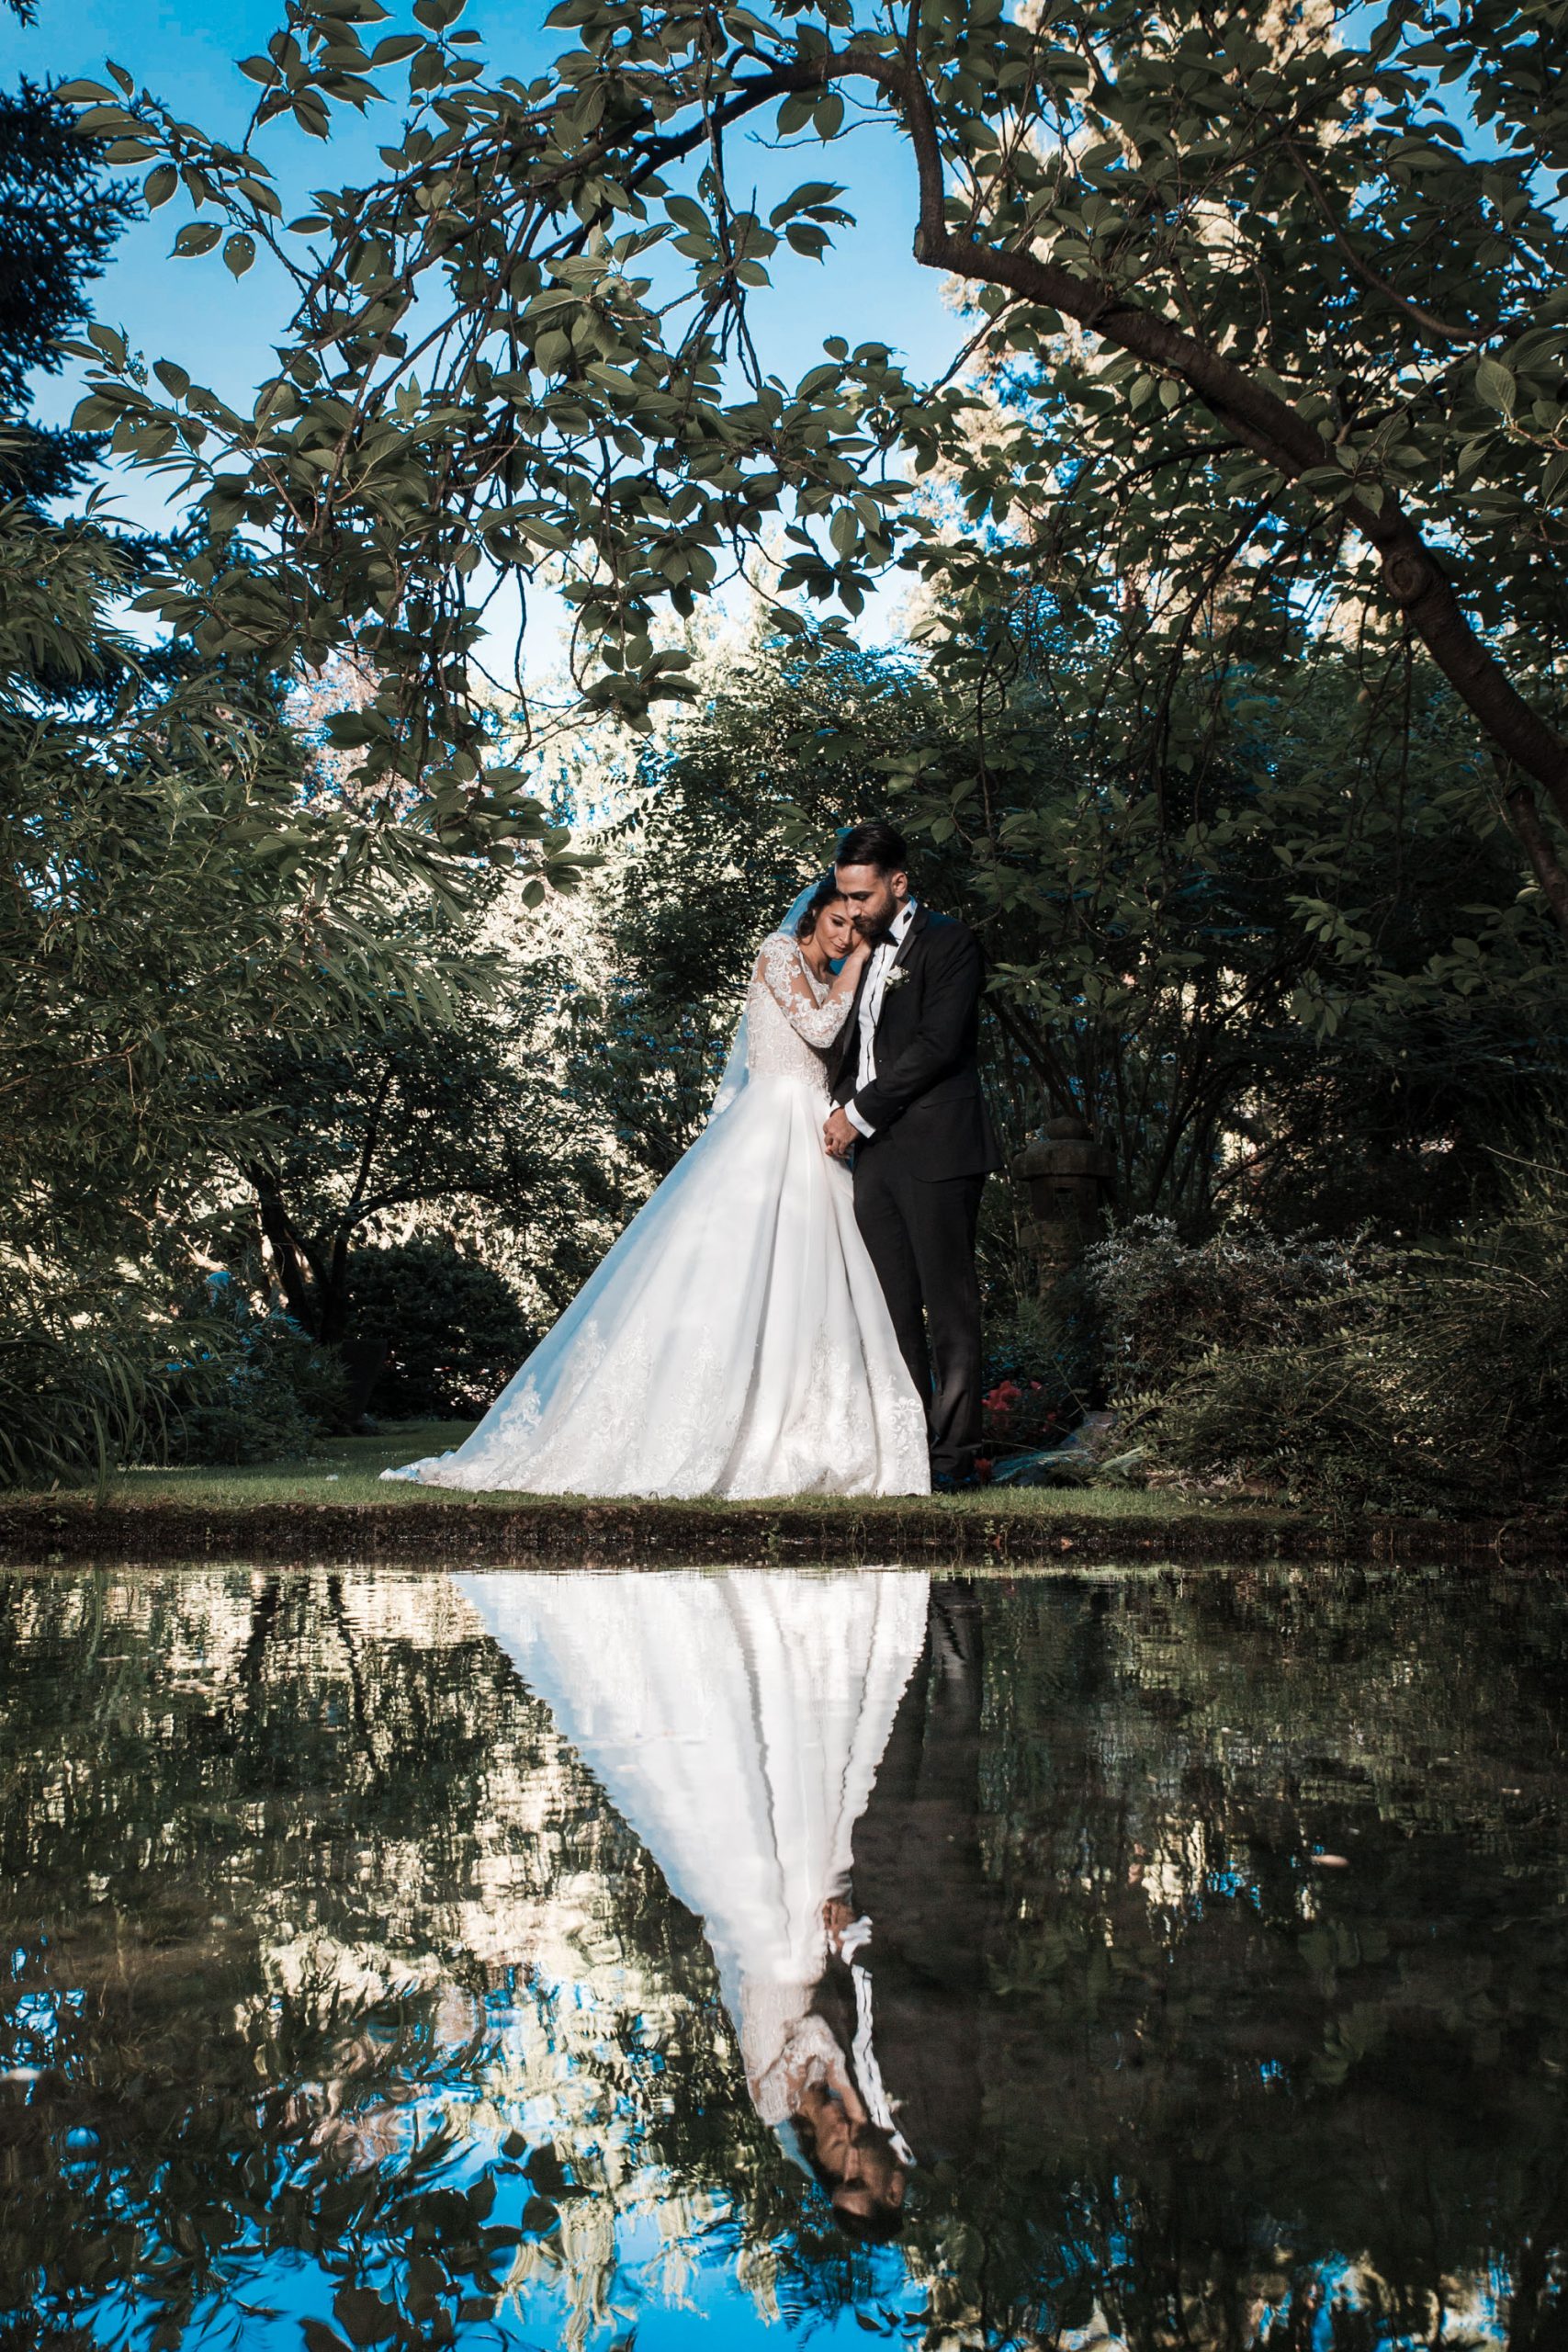 Hochzeitsbild eines türkischen Brautpaares am Wasser im japanischen Garten Leverkusen. Brautpaar spiegelt sich im Wasser. kreatives Hochzeitsfoto.